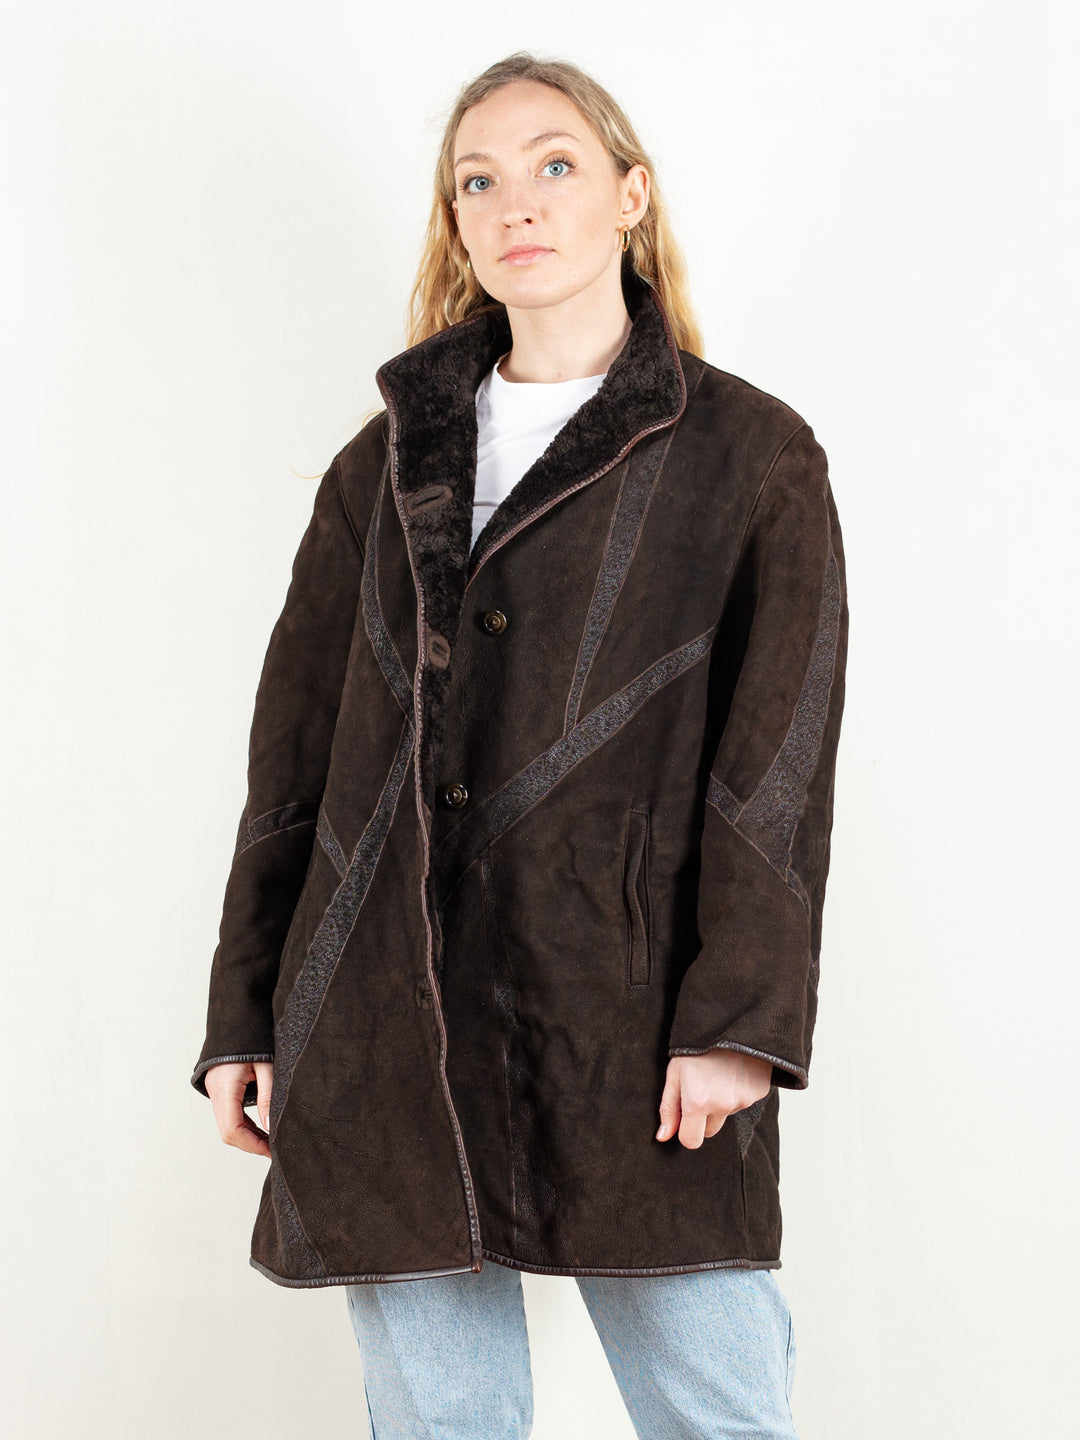 Sheepskin Shearling Coat shearl coat women vintage 80s sheepskin winter outerwear suede leather women coat 80s vintage clothing size large